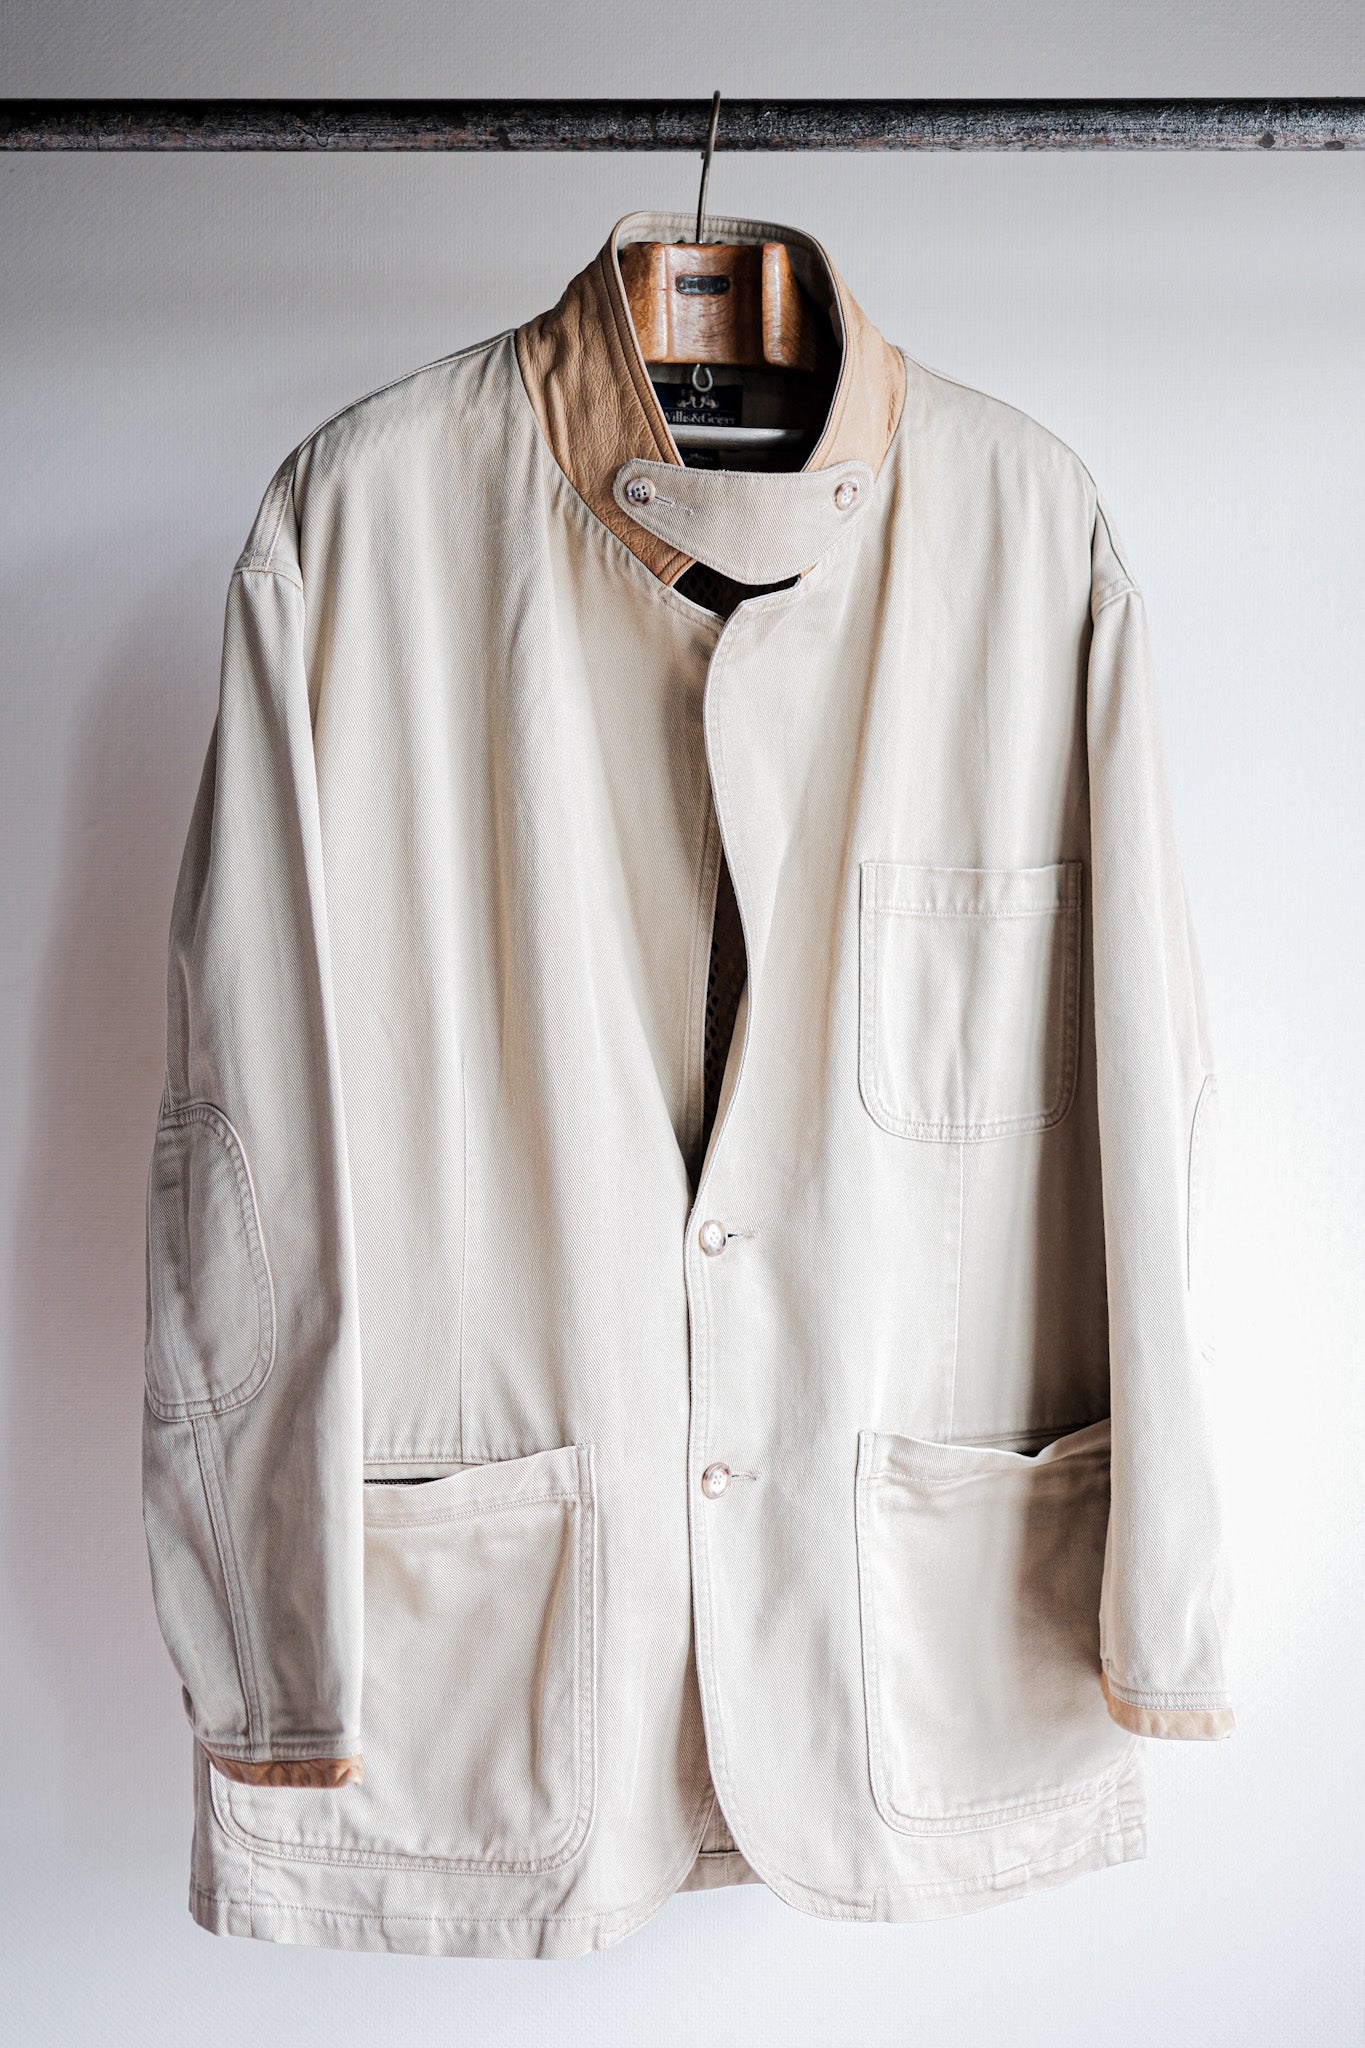 [~90 年代]Willis&Geiger 棉質狩獵夾克帶下巴帶尺寸.L